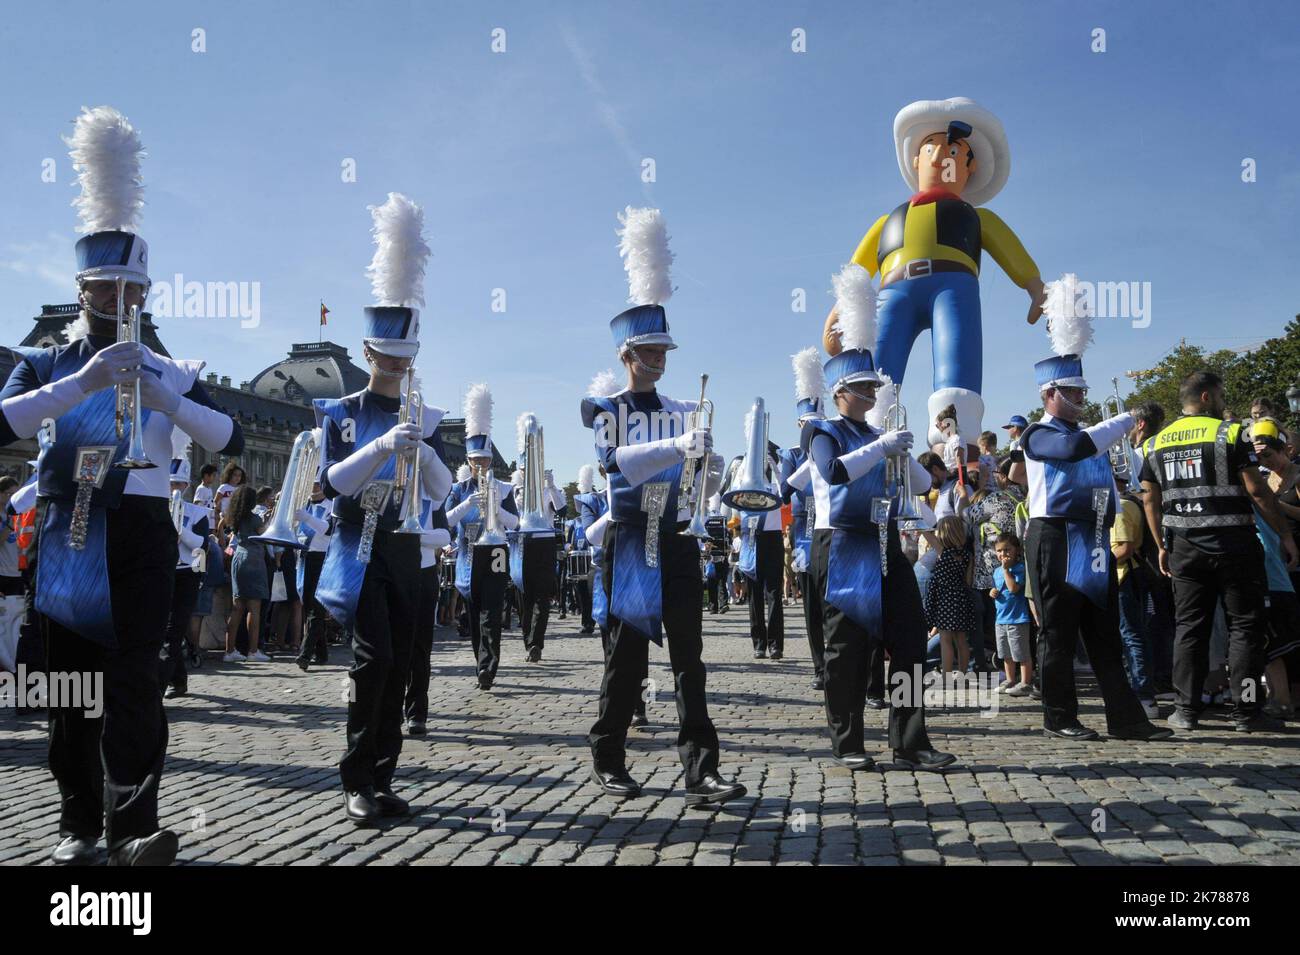 An diesem Sonntag fand in Brüssel im Rahmen des Comic Strip Festivals eine Parade von riesigen Ballons mit dem Bildnis verschiedener weltberühmter Charaktere statt. Eine große Menschenmenge war umgezogen, dem Cortege zu folgen und bewunderte auch Darth Vader und seine Truppen oder die verschiedenen Fanfaren, die die Parade animierten. Stockfoto